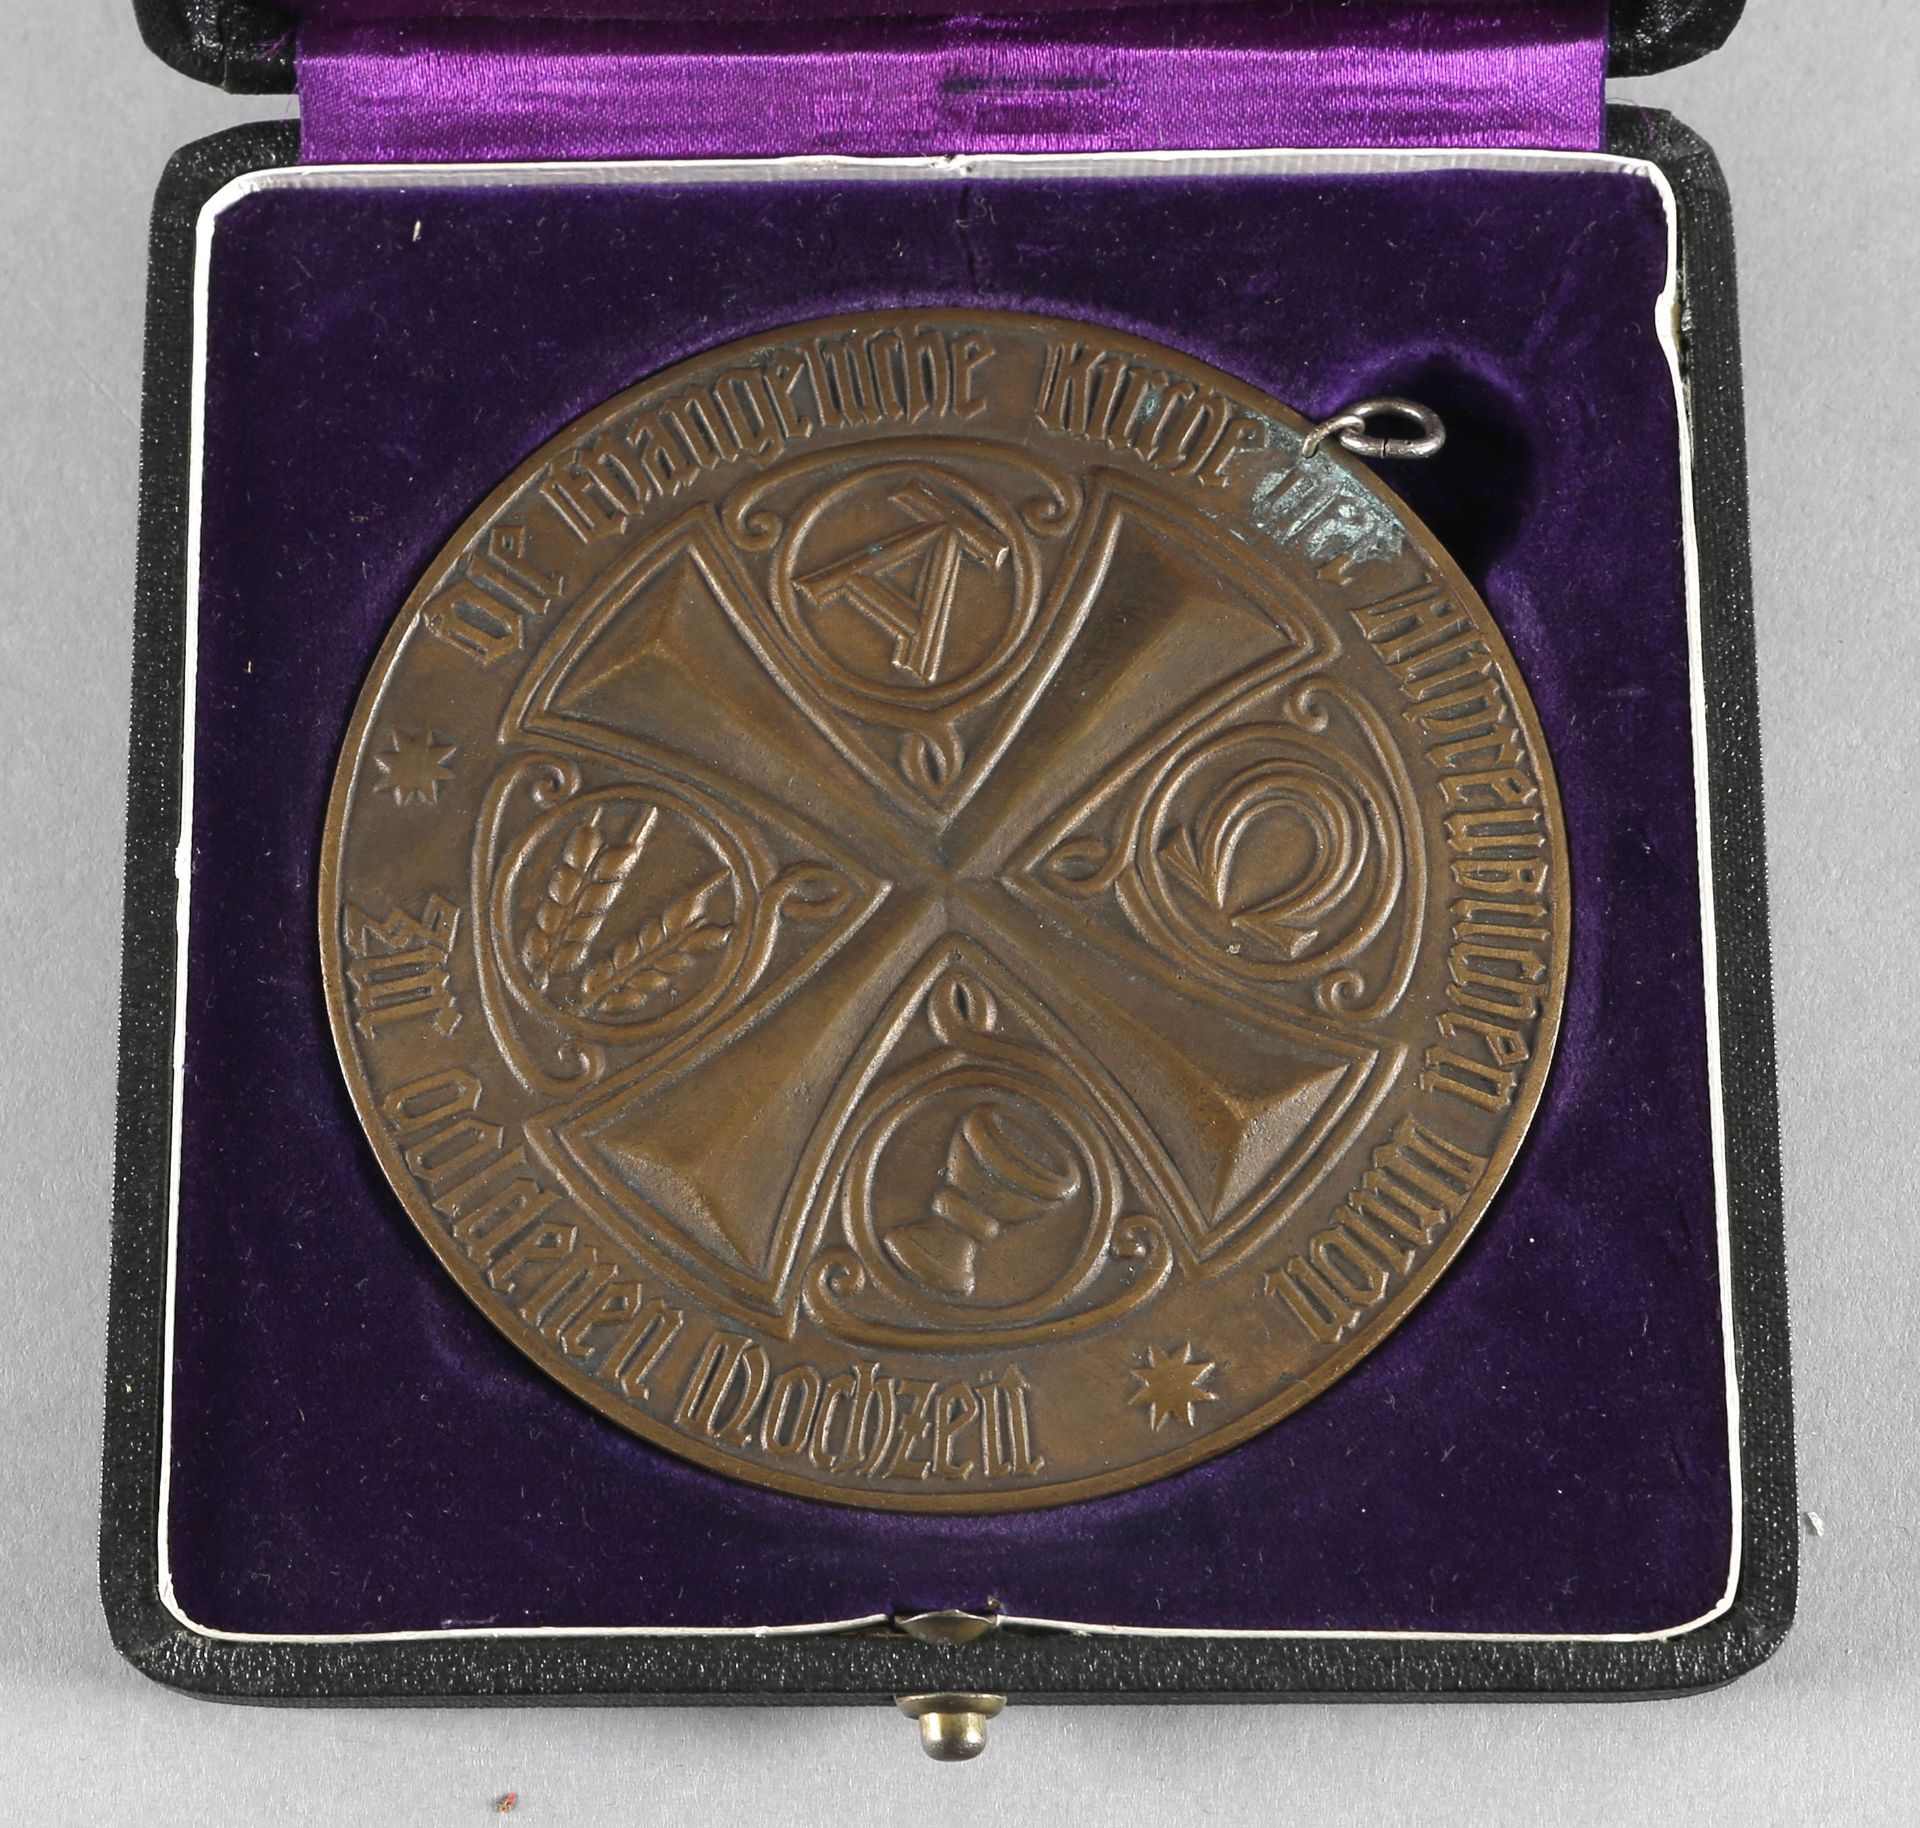 Große Medaille zur goldenen Hochzeit, Evangelische Kirche der Altpreußischen Union - Image 2 of 2